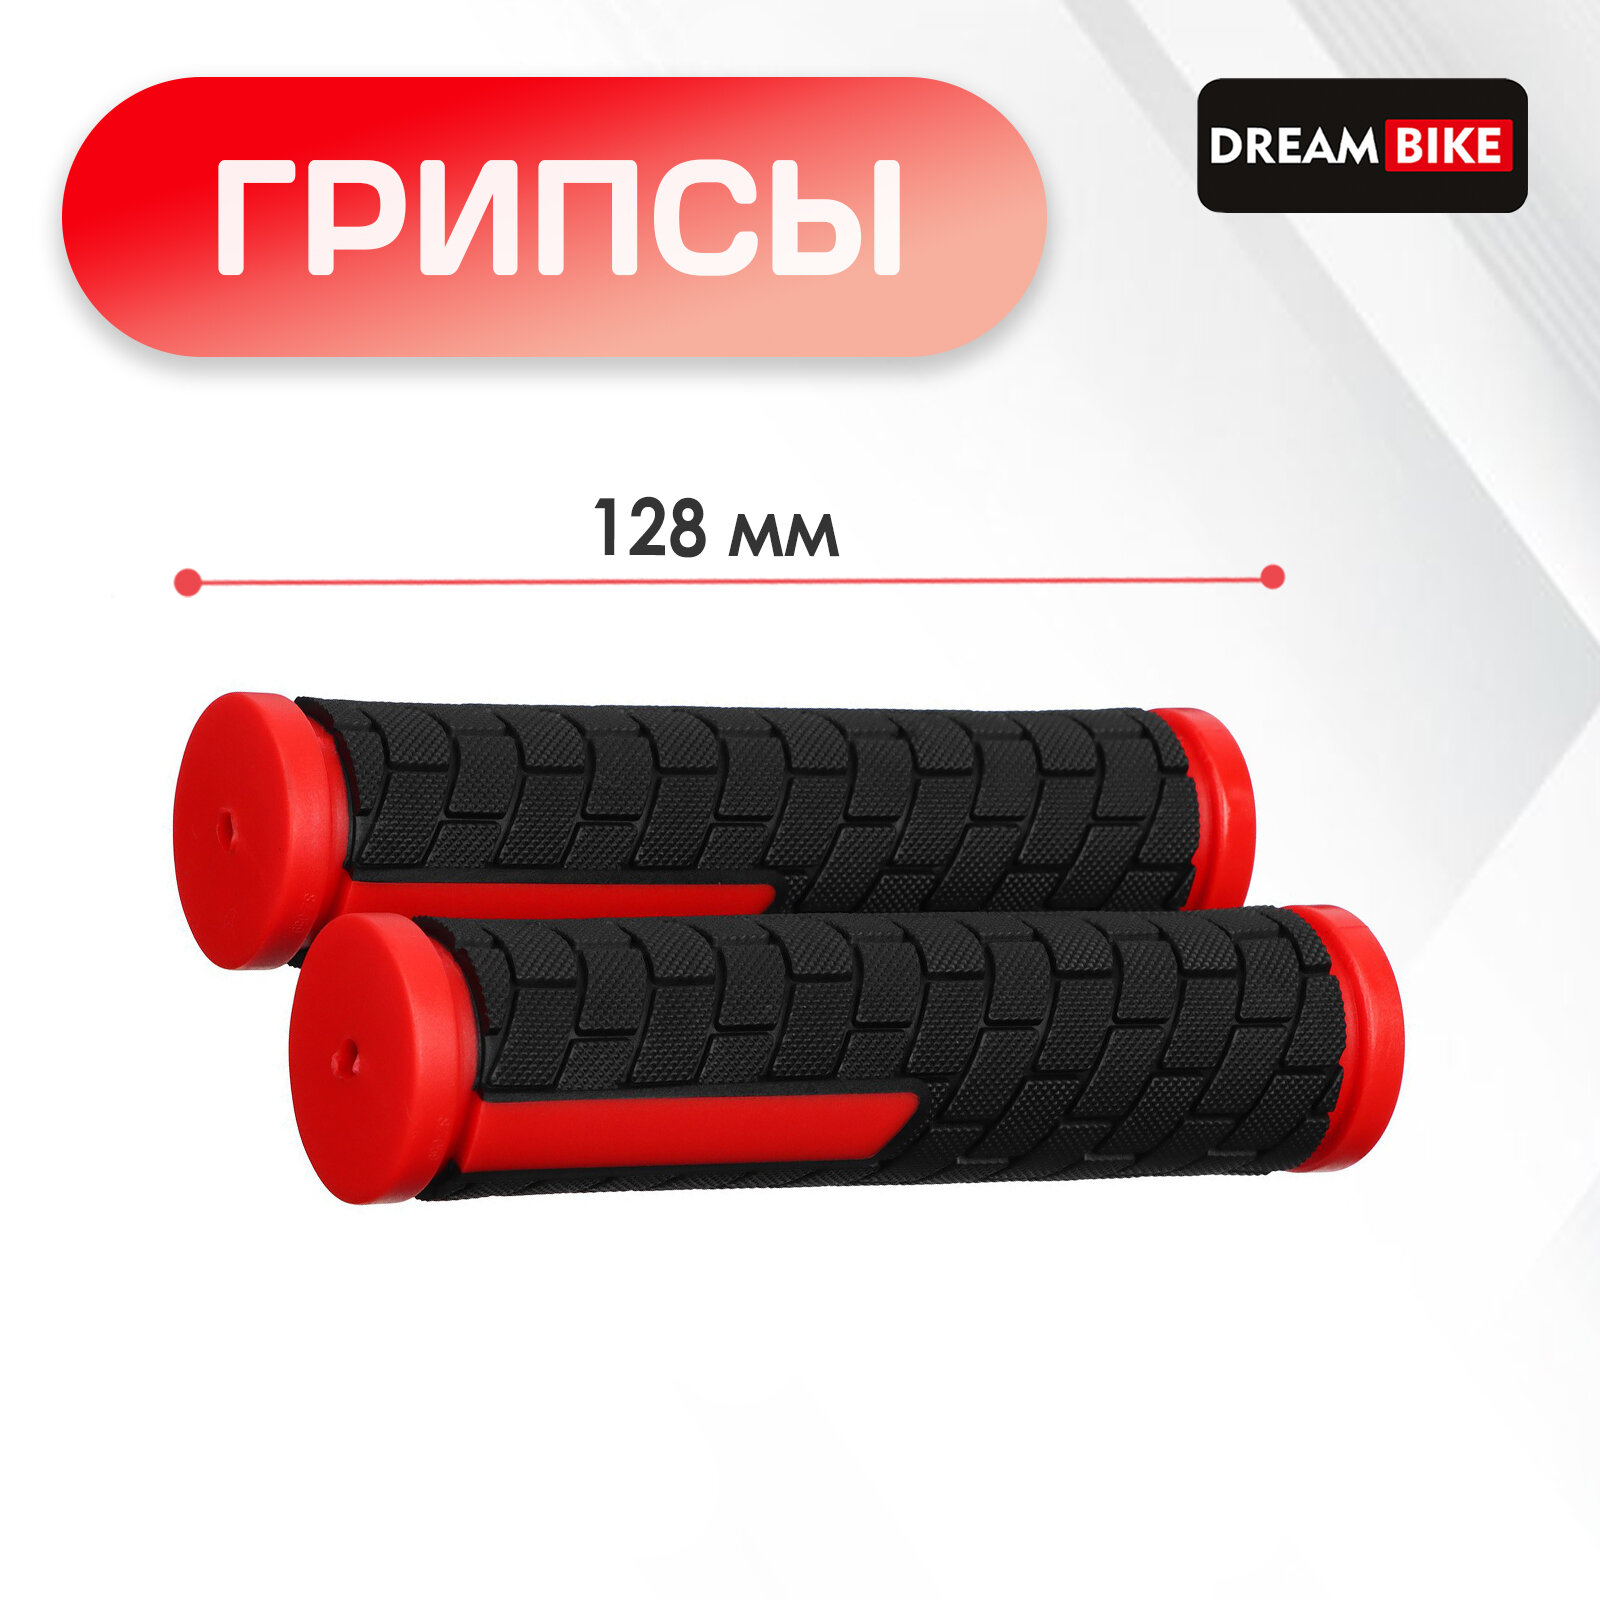 Грипсы 128 мм, Dream Bike, посадочный диаметр 22,2 мм, цвет чёрный, красный